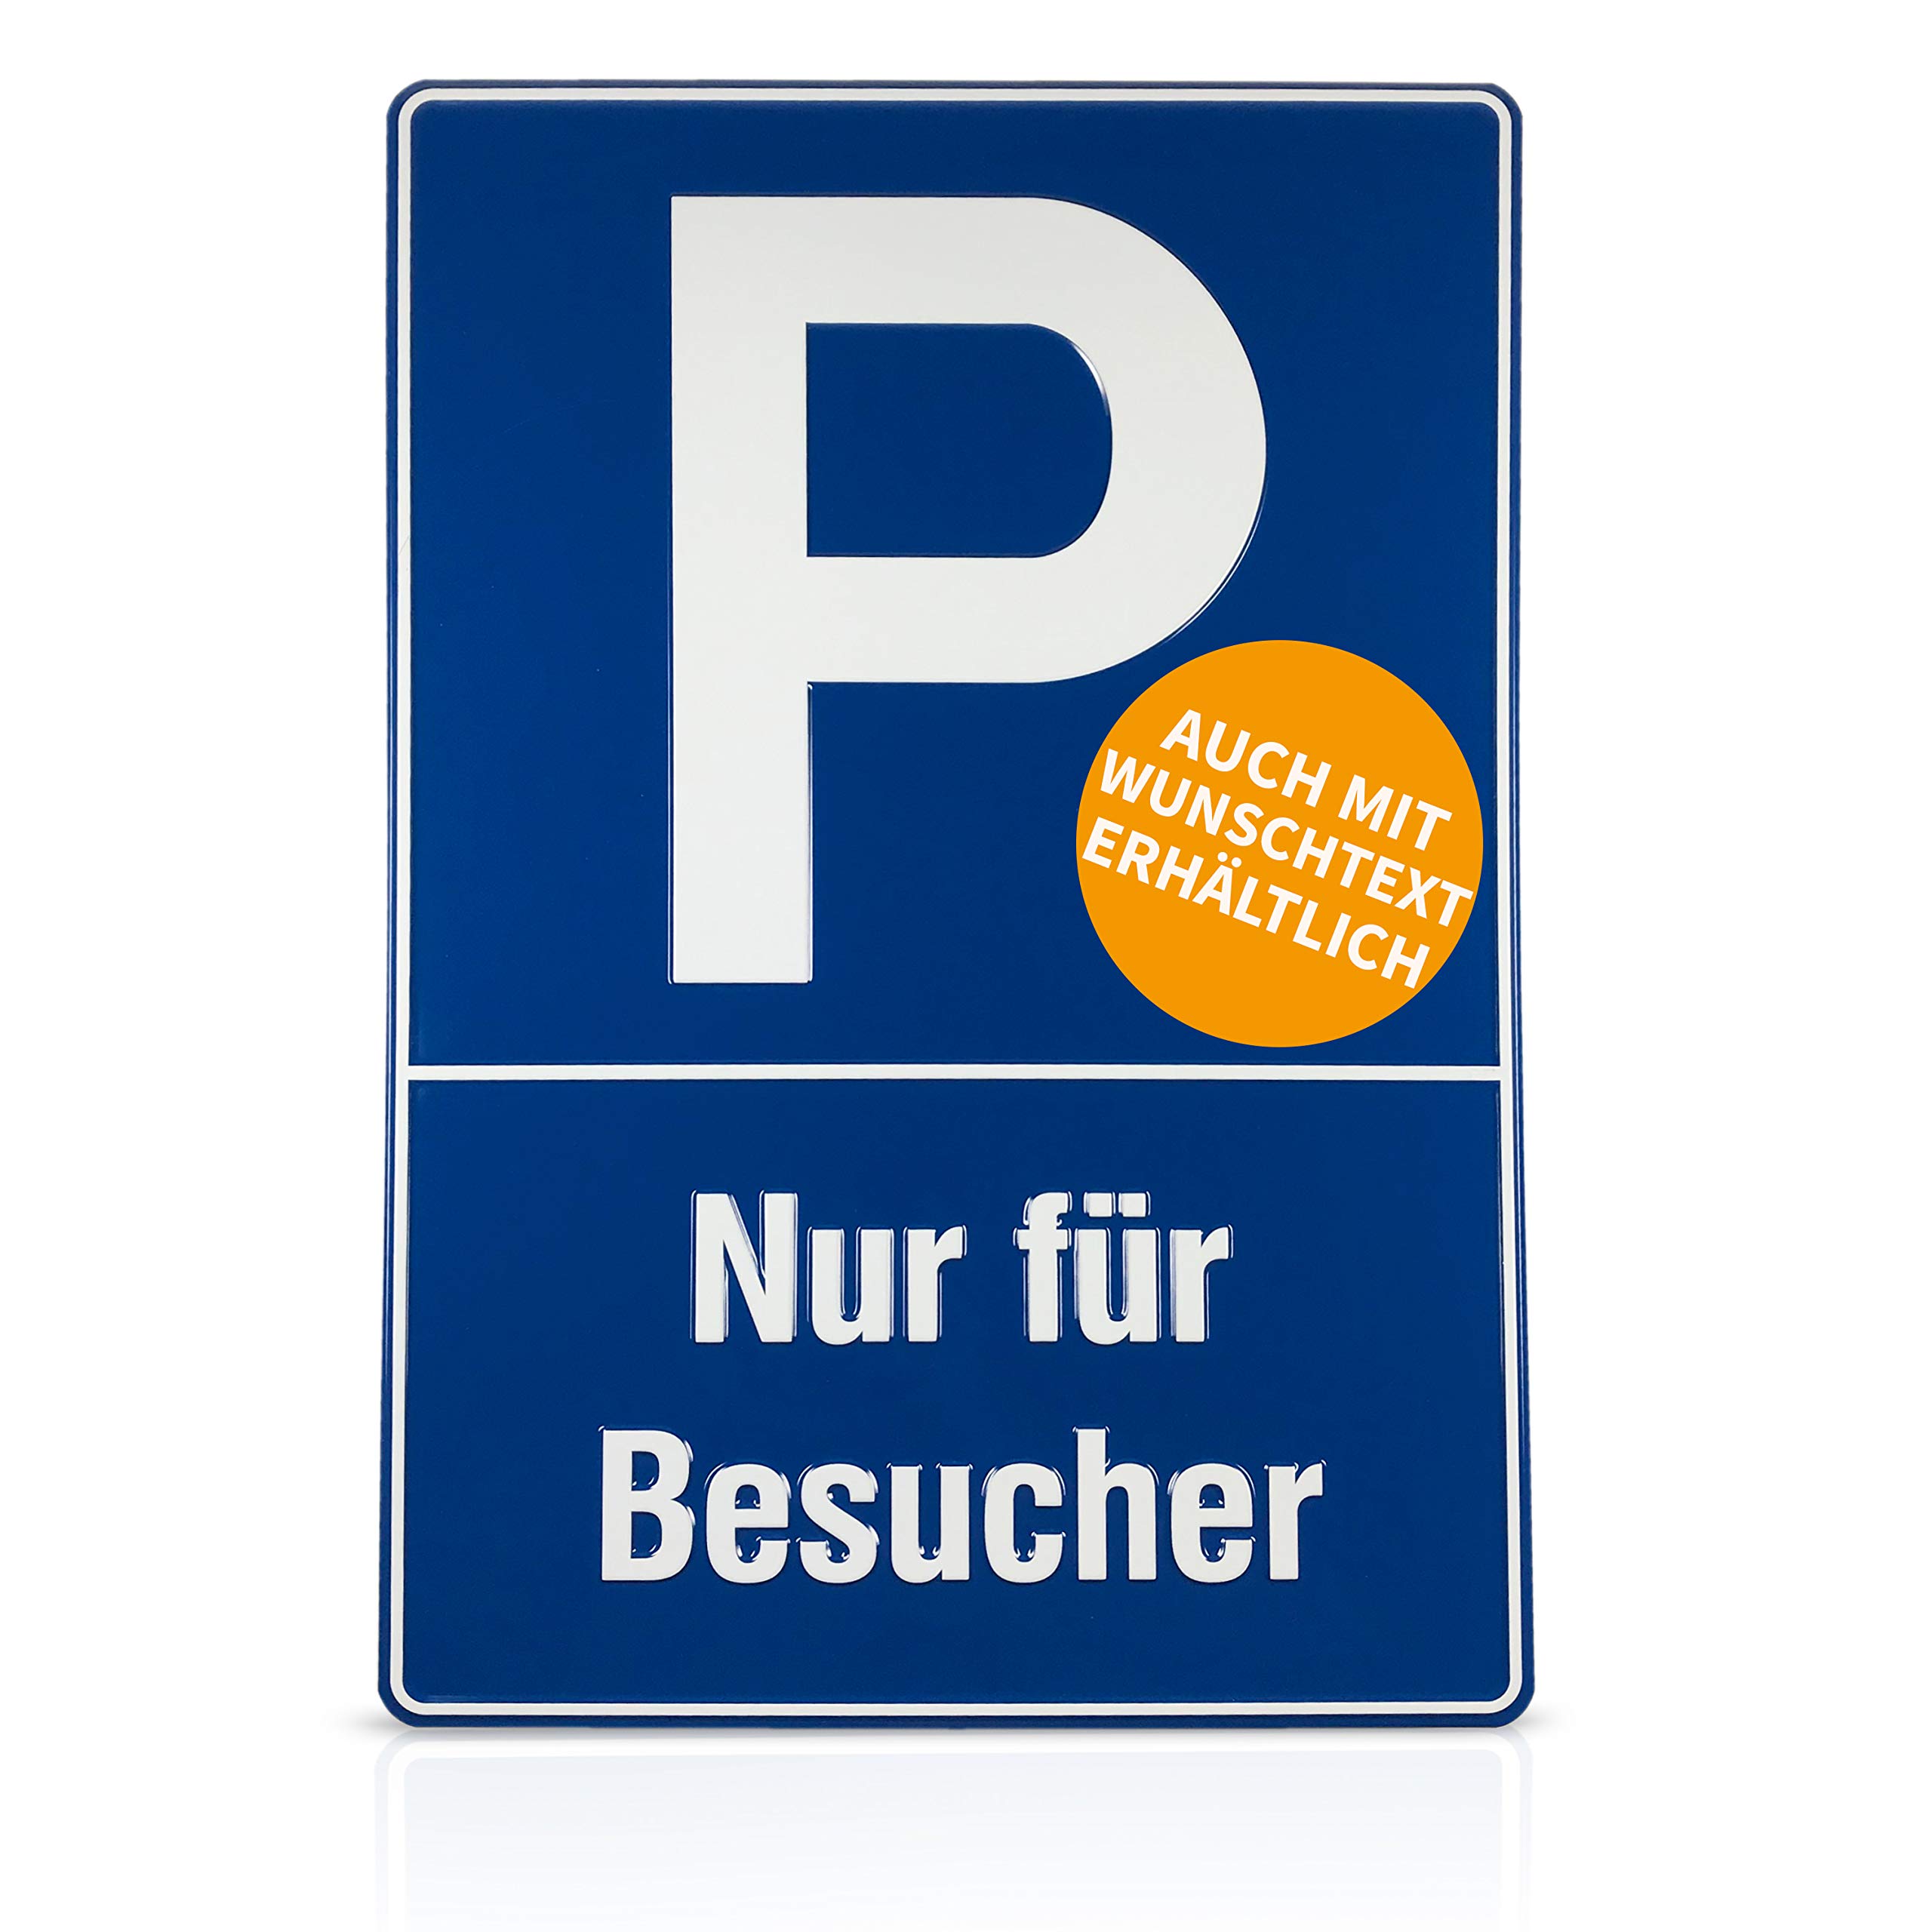 Betriebsausstattung24® Geprägtes Parkplatzschild aus Aluminium | BxH 40,0 x 60,0 cm | Besucherparkplatz